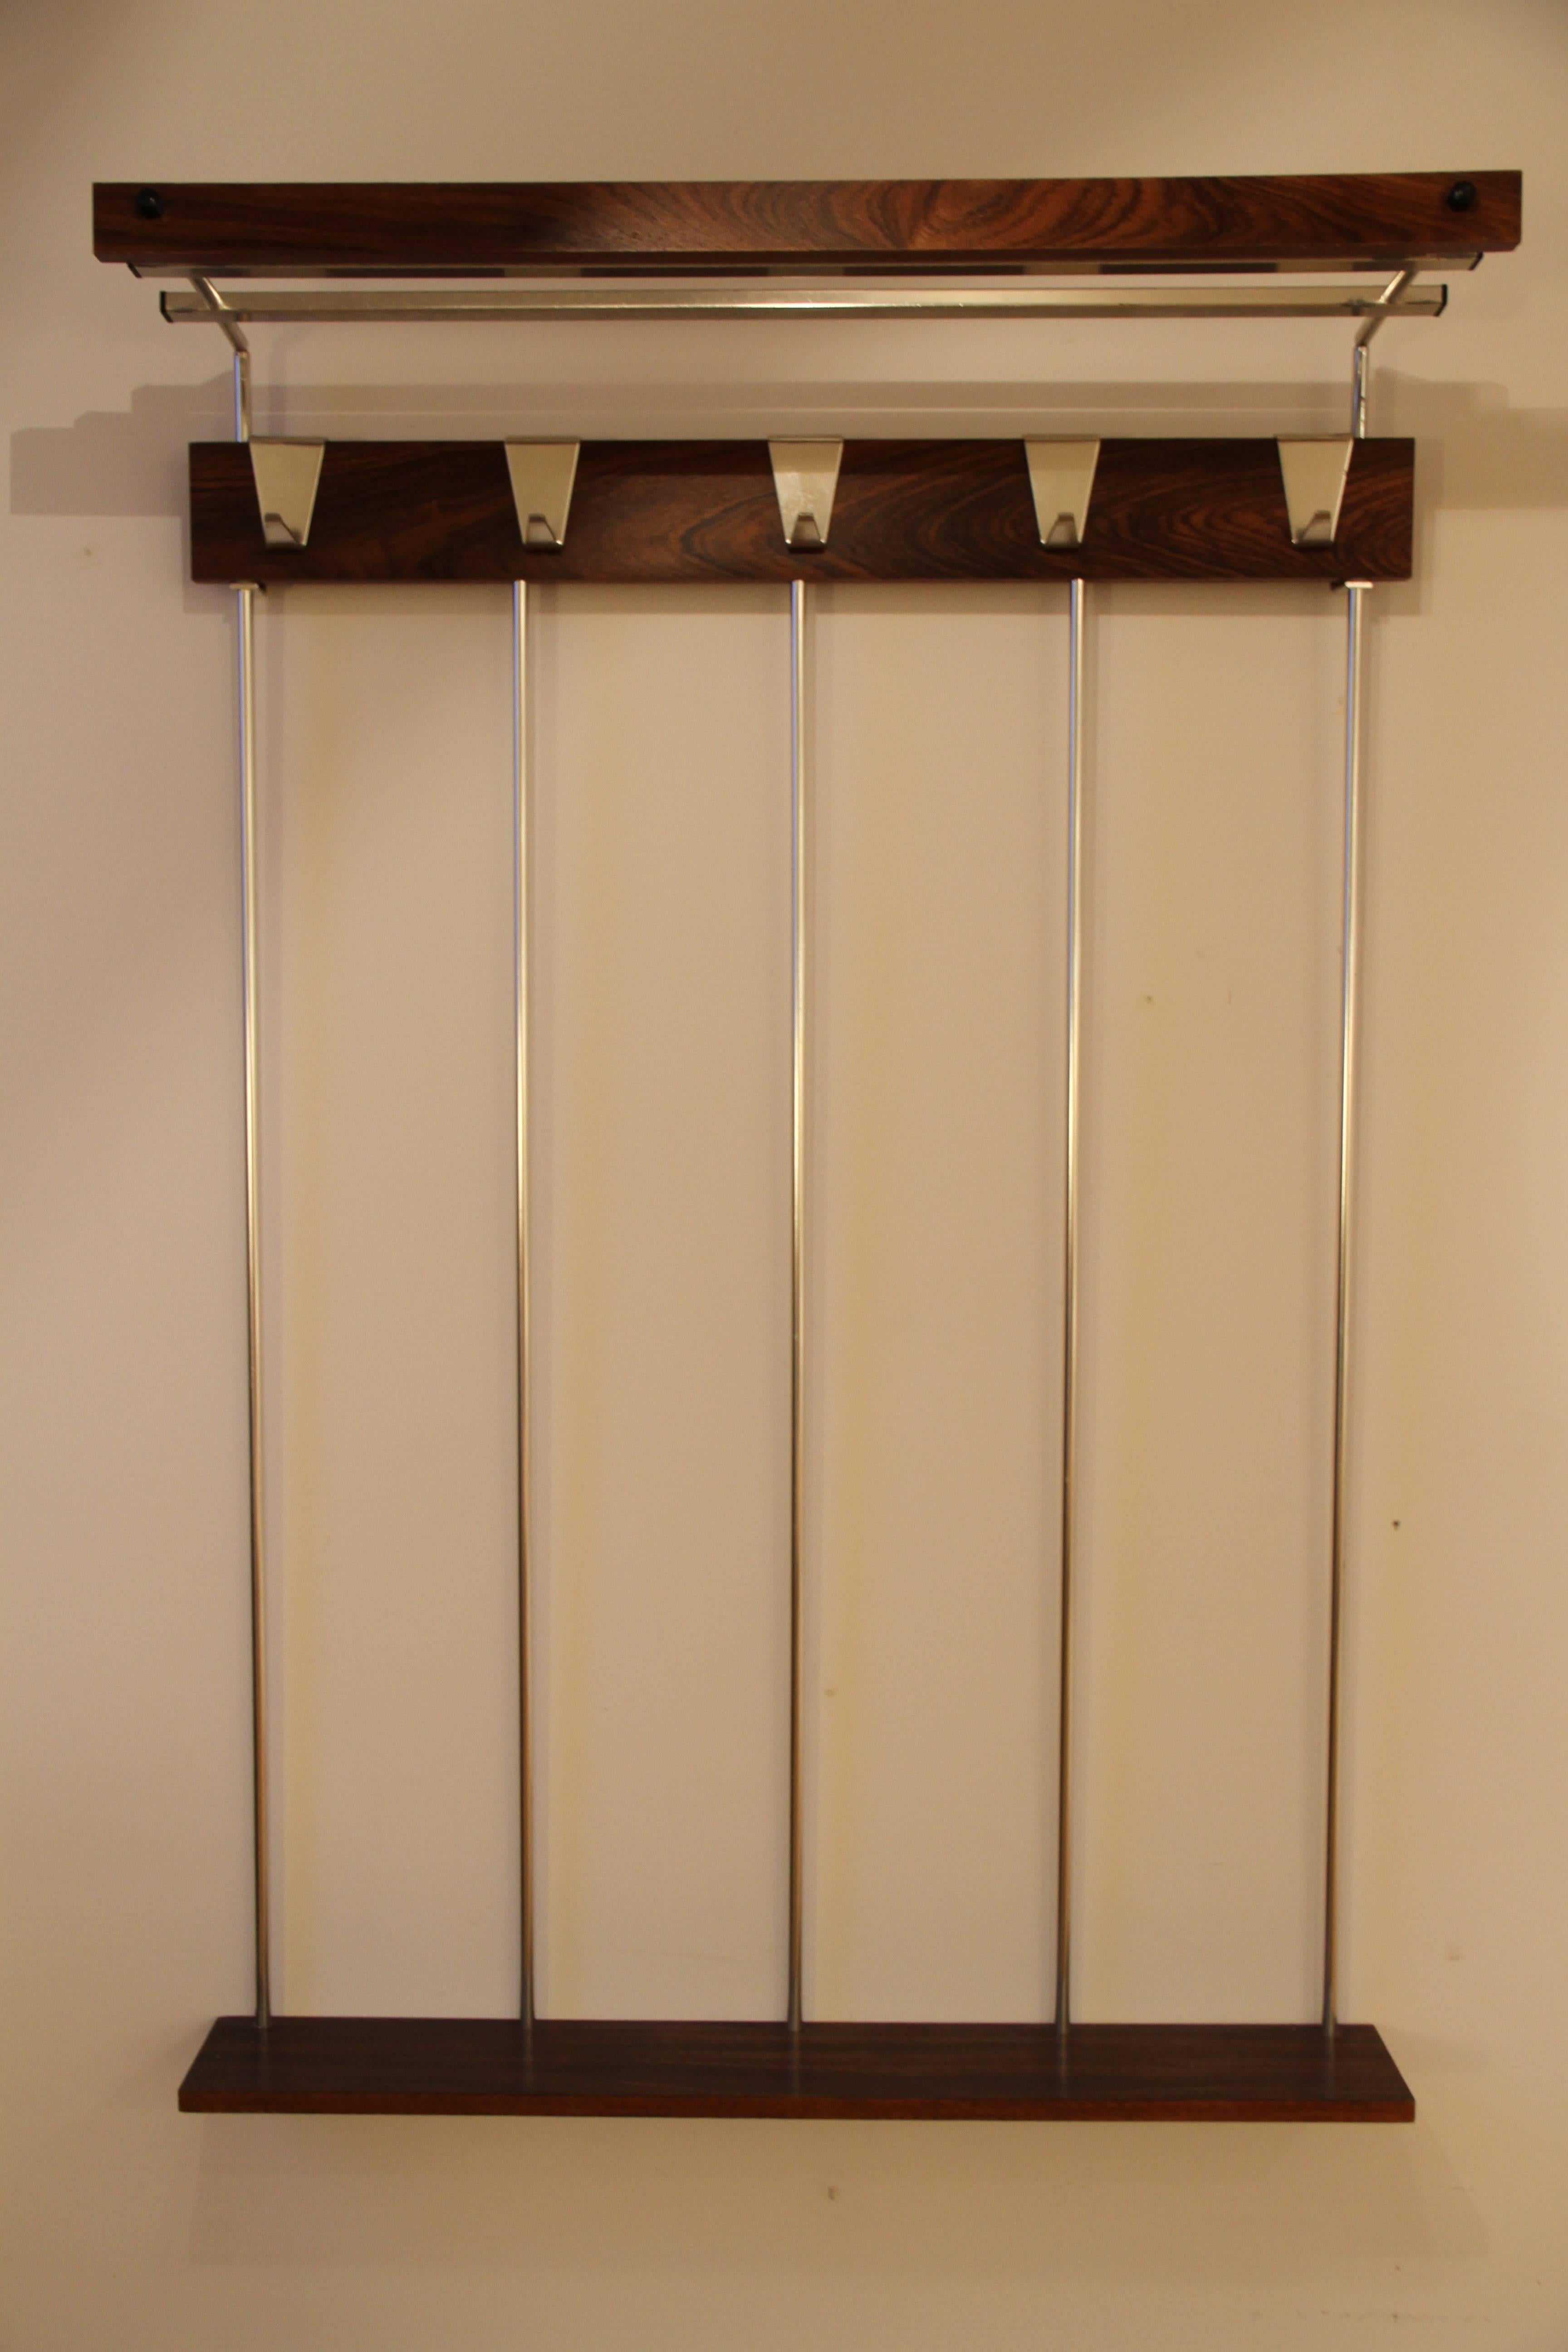 Elegant coat rack
in palisander and aluminium.